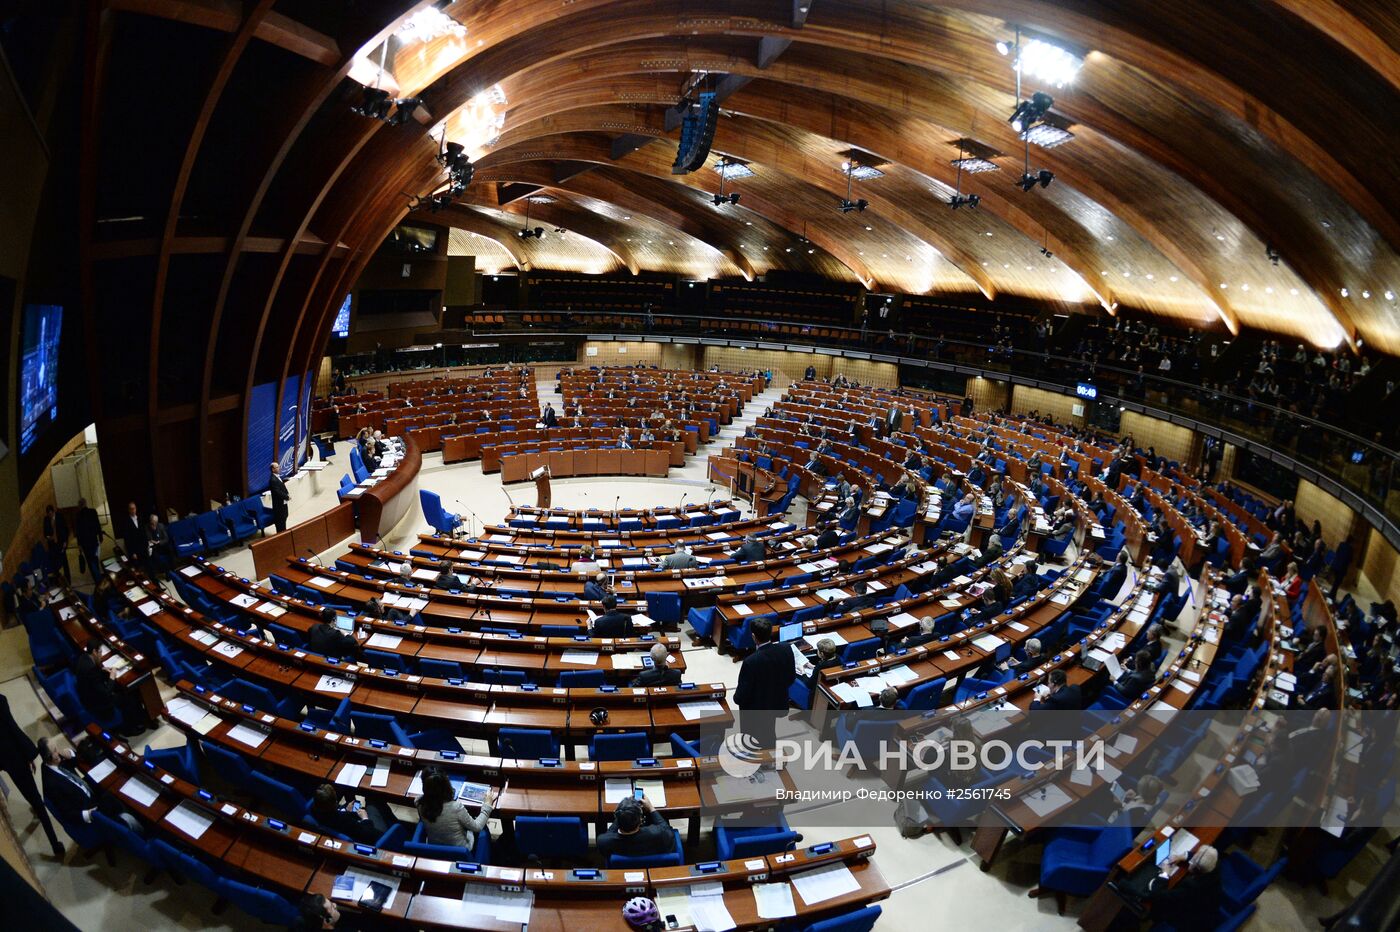 Пленарное заседание зимней сессии Парламентской ассамблеи Совета Европы